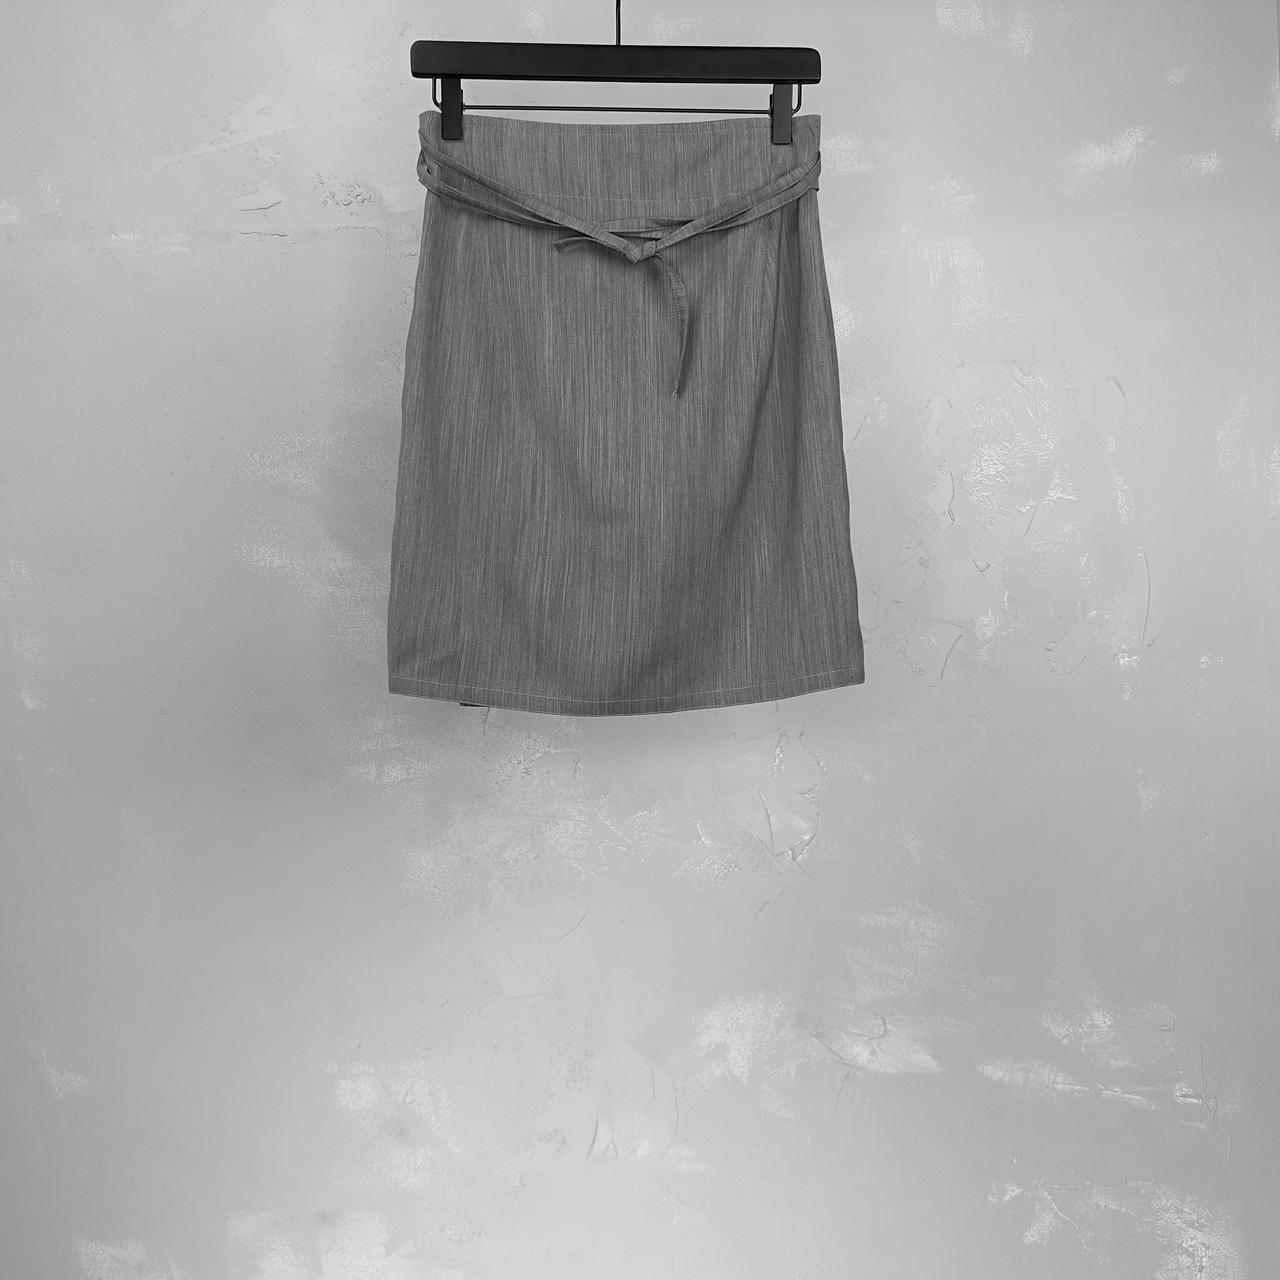 Ann Demeulemeester Women's Grey Skirt